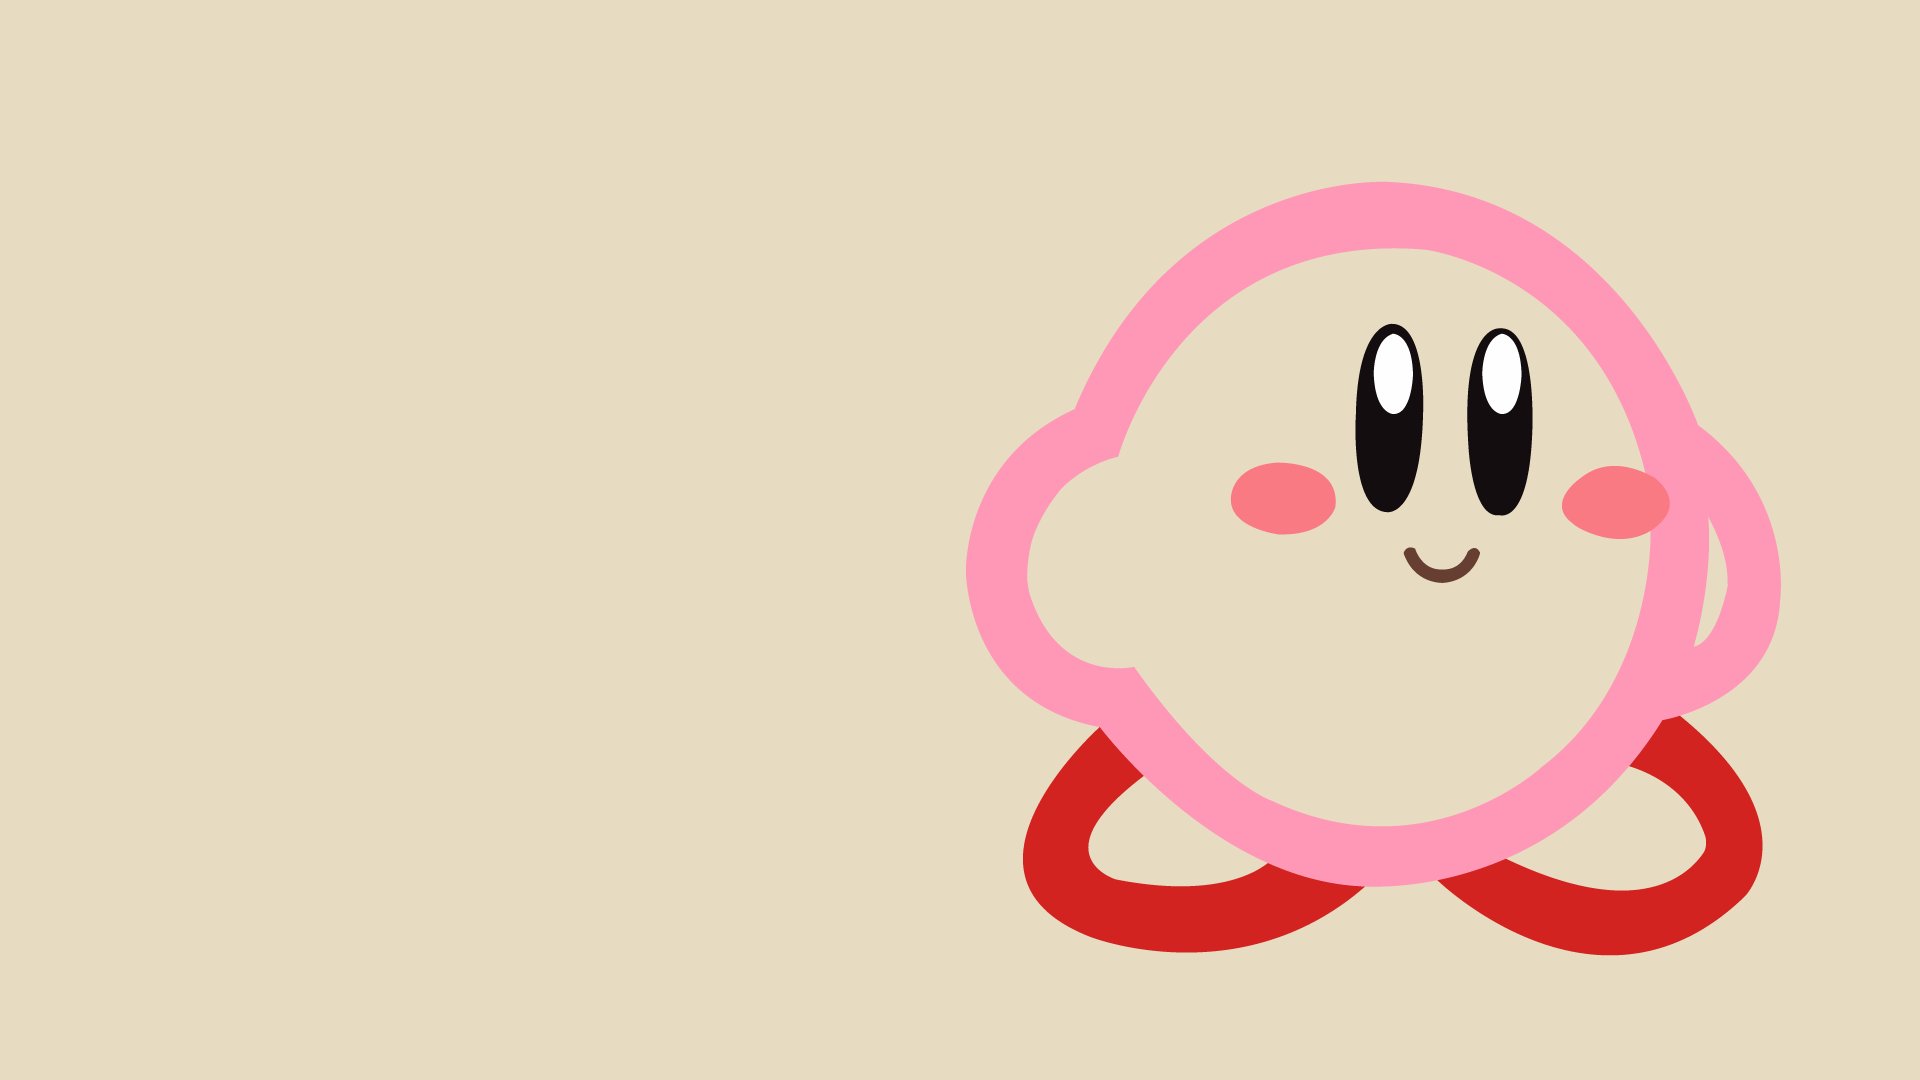 Hãy cùng tận hưởng những giây phút thư giãn với hình nền Kirby cùng nhà sản xuất Nintendo. Những hình ảnh Kirby đáng yêu và ngộ nghĩnh cùng với nền tảng và cuộn trang sẵn sàng đón chào bạn.